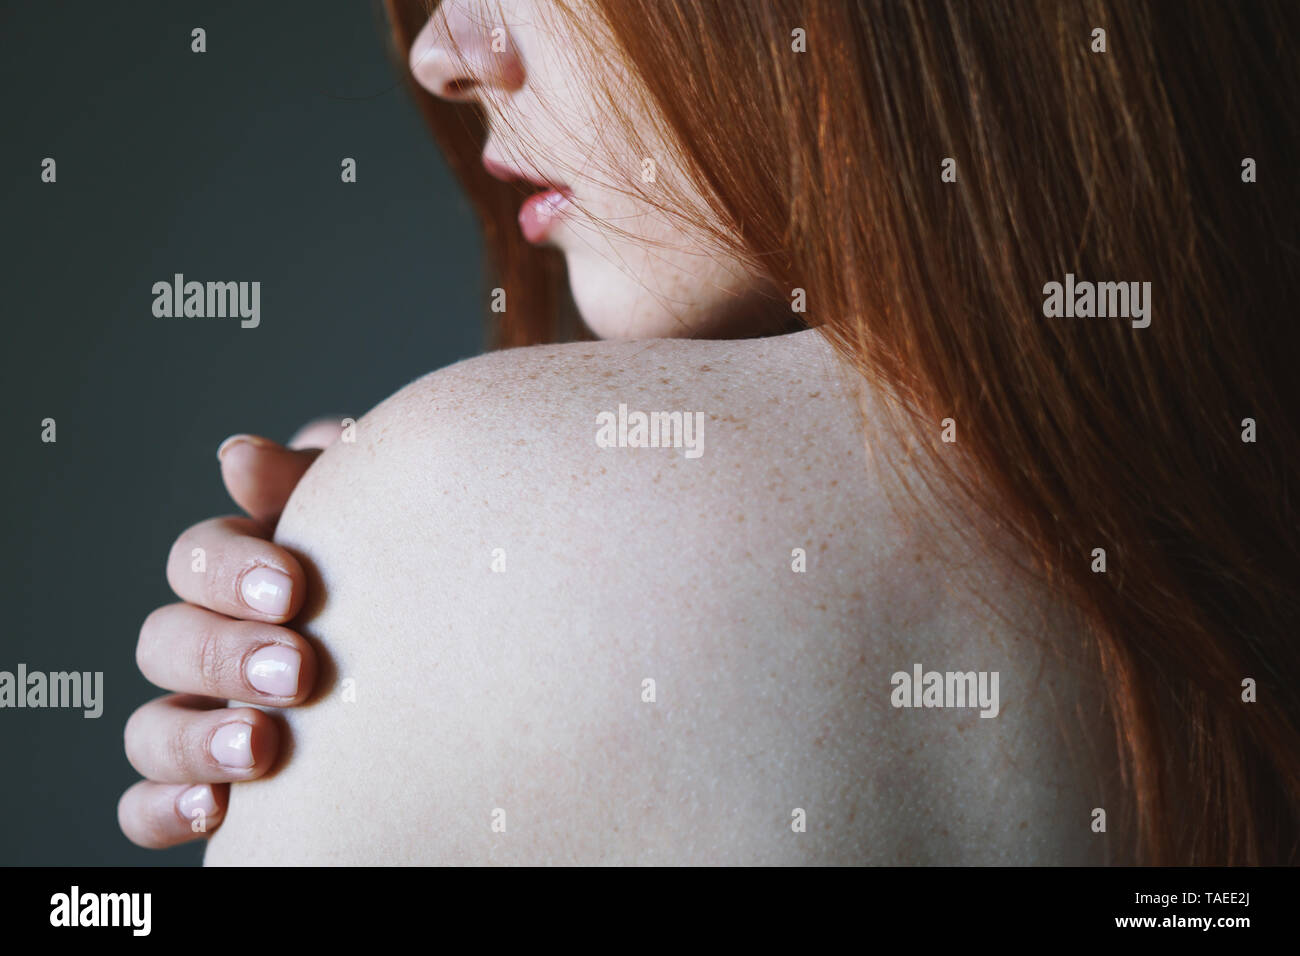 Junge Frau mit roten Haaren und Sommersprossen auf der nackten Schulter - Haut- und Körperpflege Konzept Stockfoto